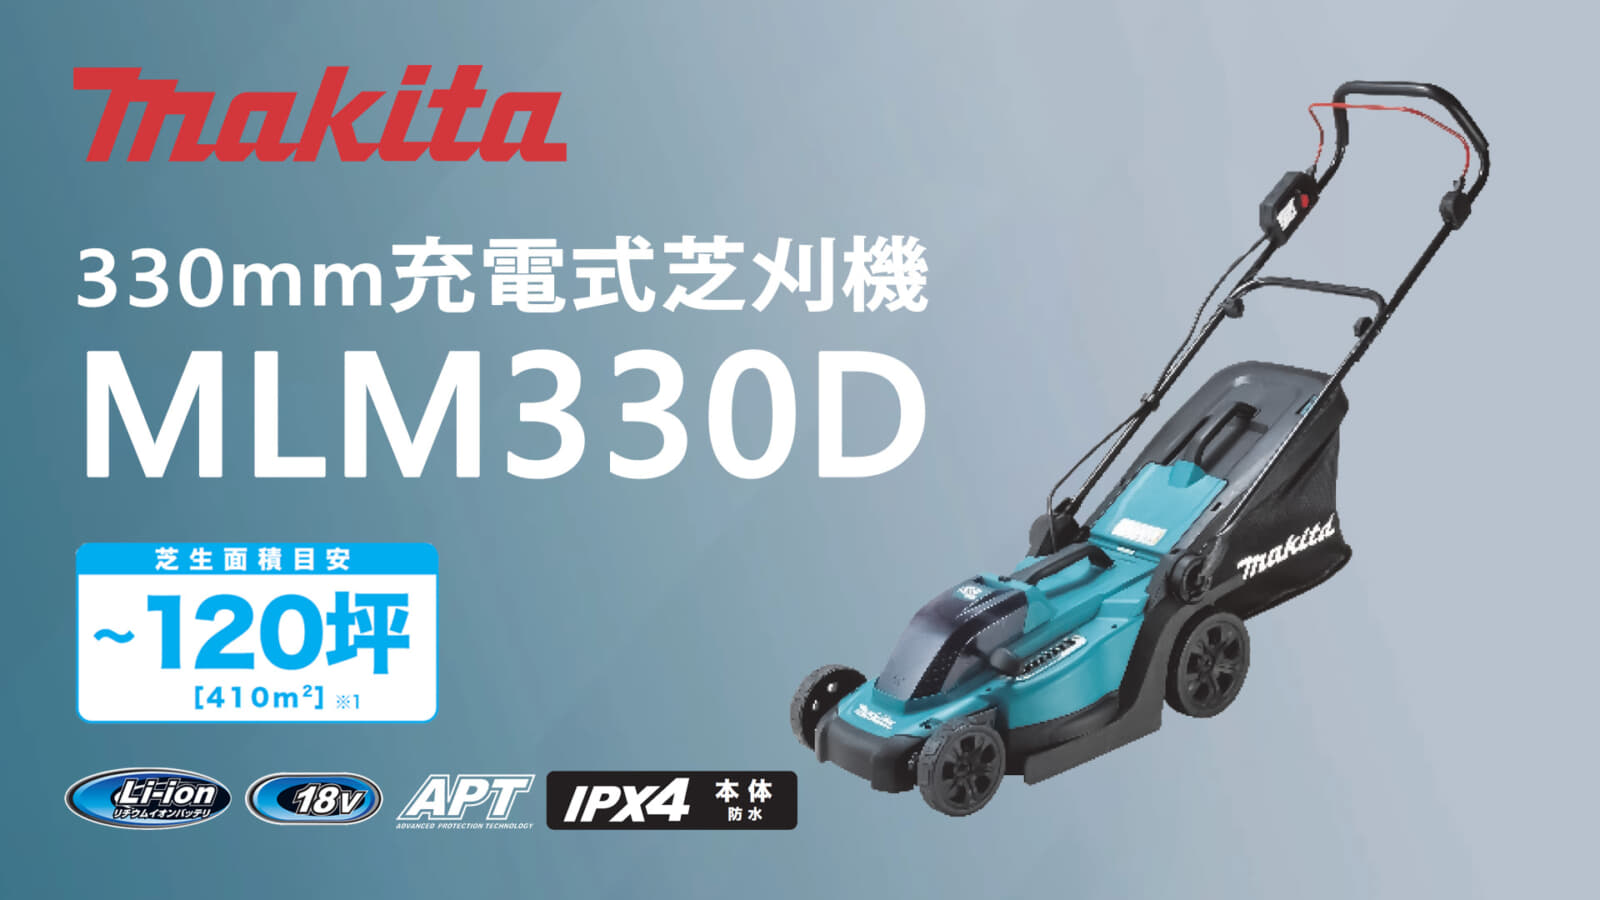 マキタ MLM330D 330mm充電式芝刈機を発売、大型でリーズナブルな芝刈機 ...